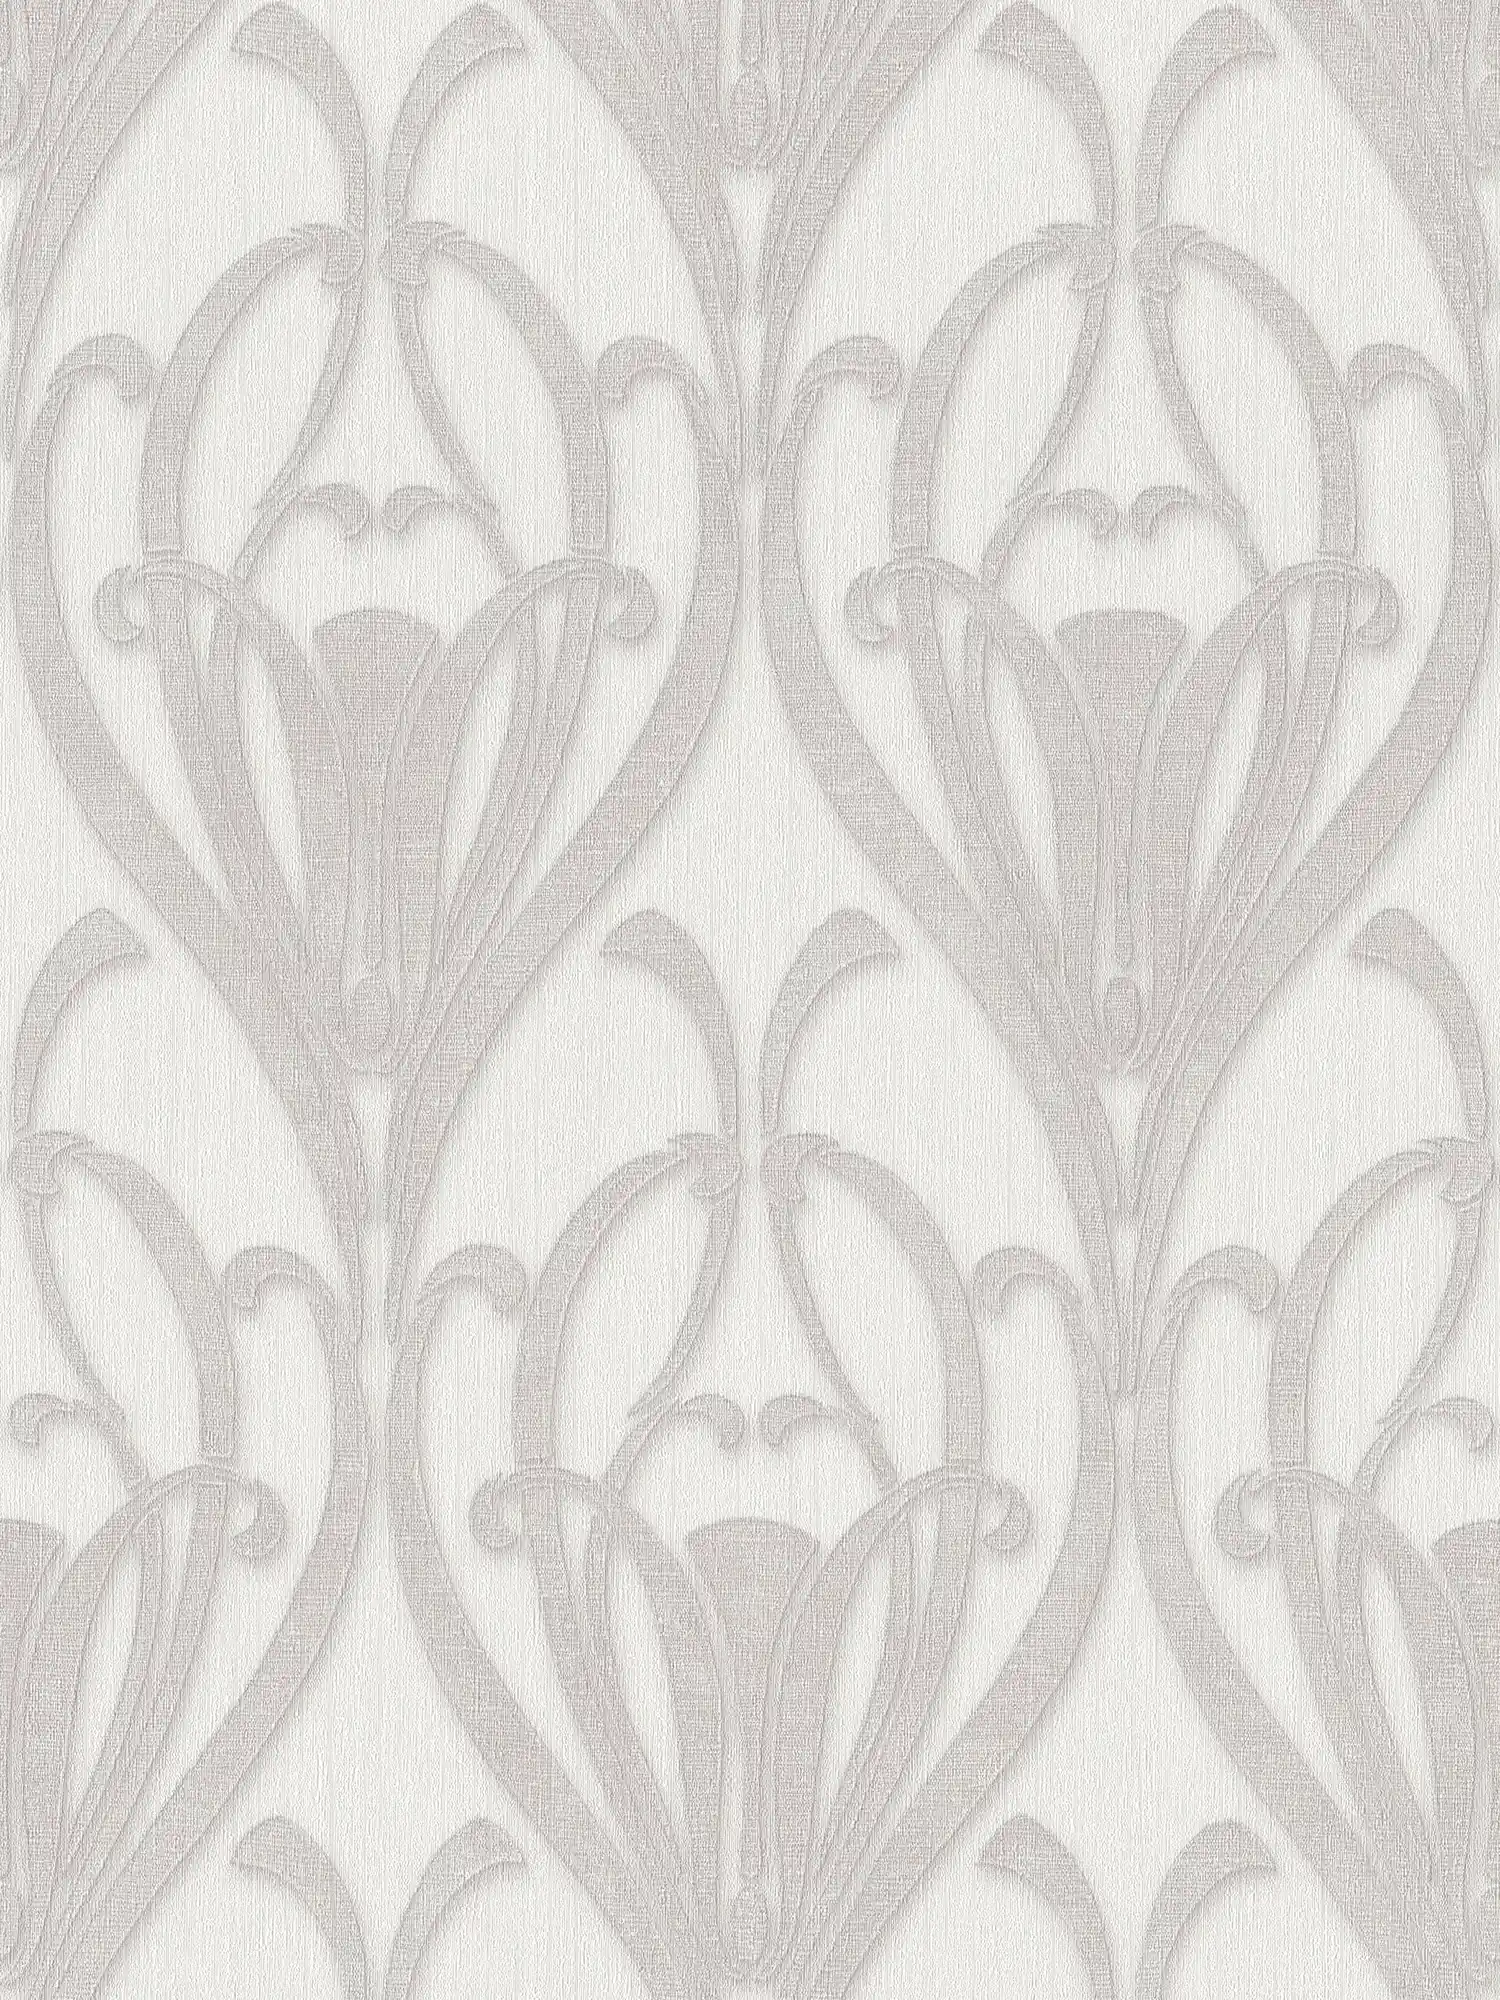 Ornamentbehang met Art Deco patroon & textielstructuur
